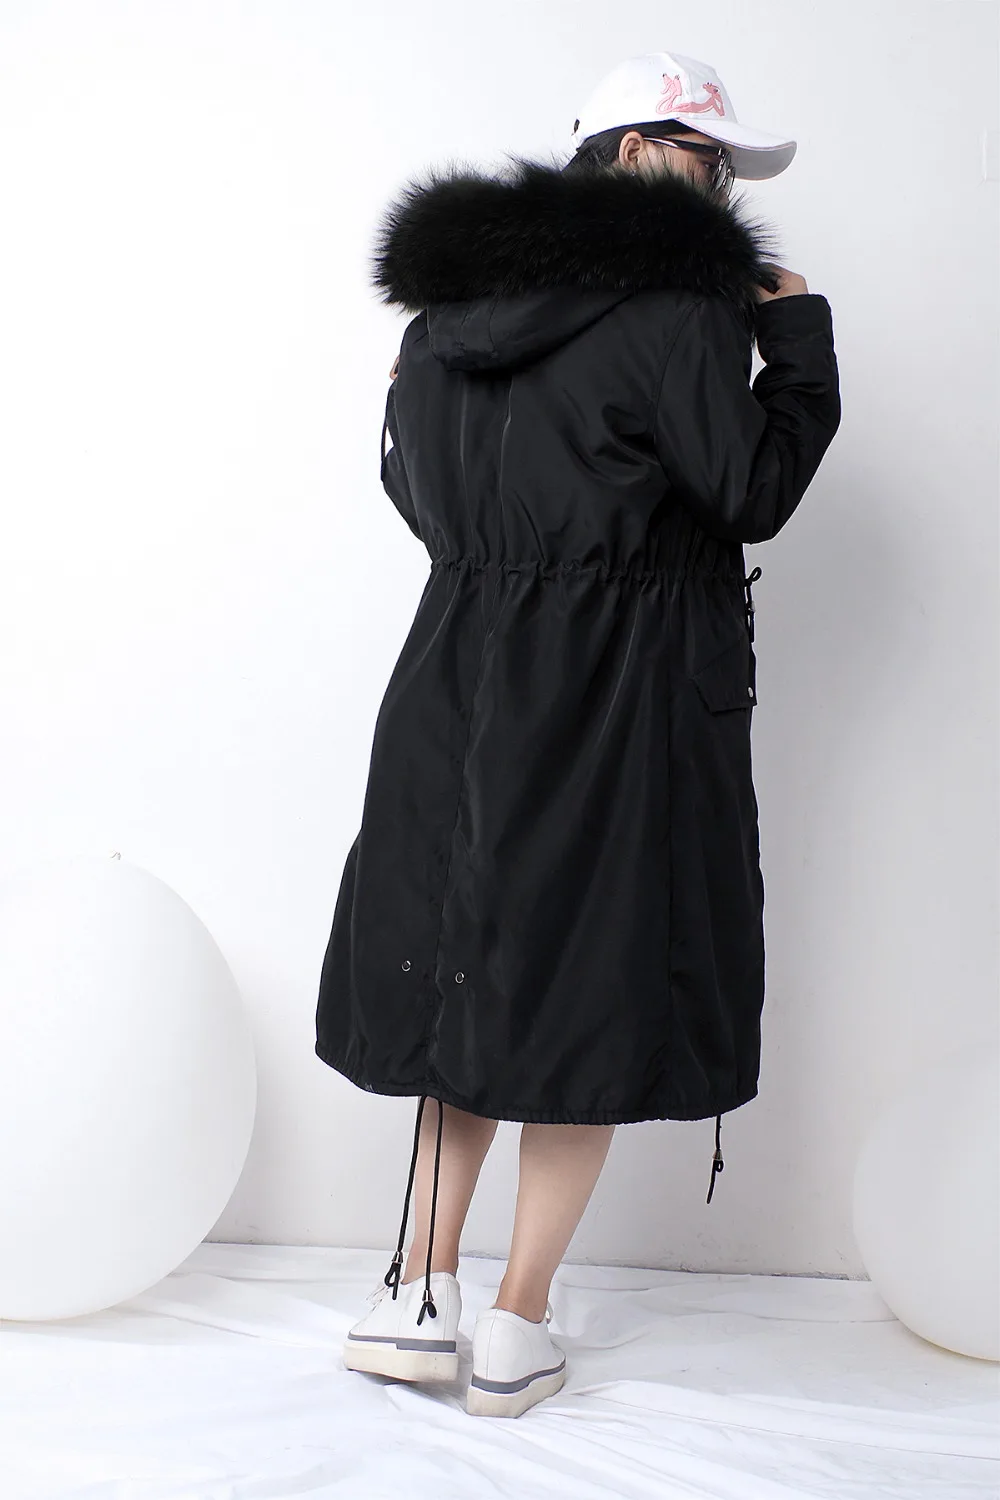 Женское пальто с капюшоном из меха енота, парки из натурального меха, большие размеры, верхняя одежда, Длинная зимняя куртка со съемным капюшоном